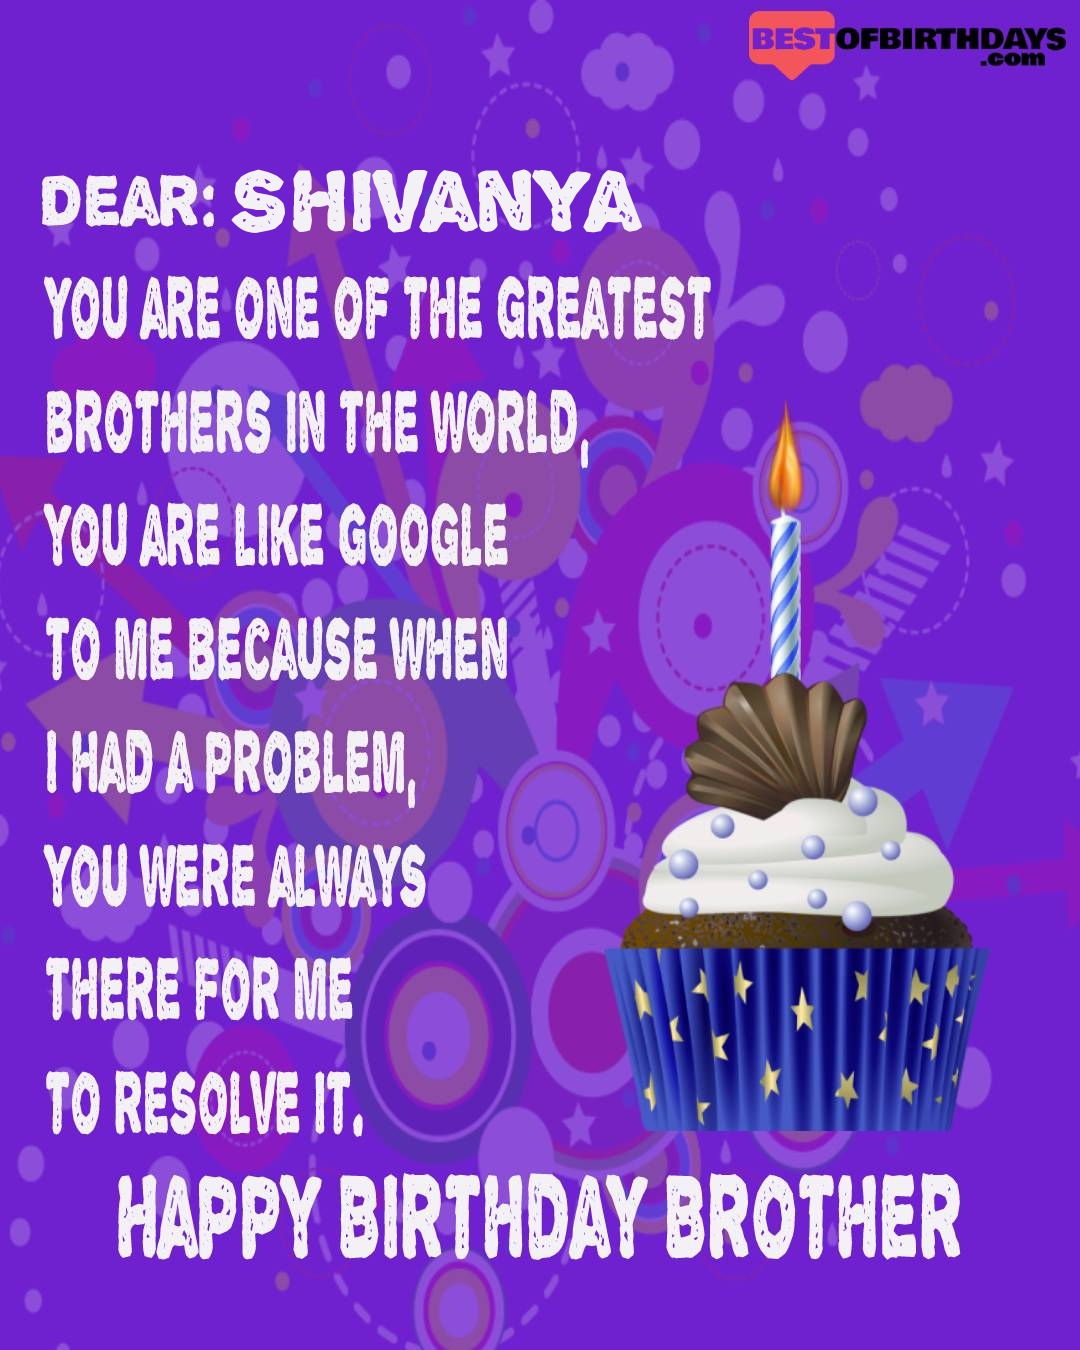 Happy birthday shivanya bhai brother bro